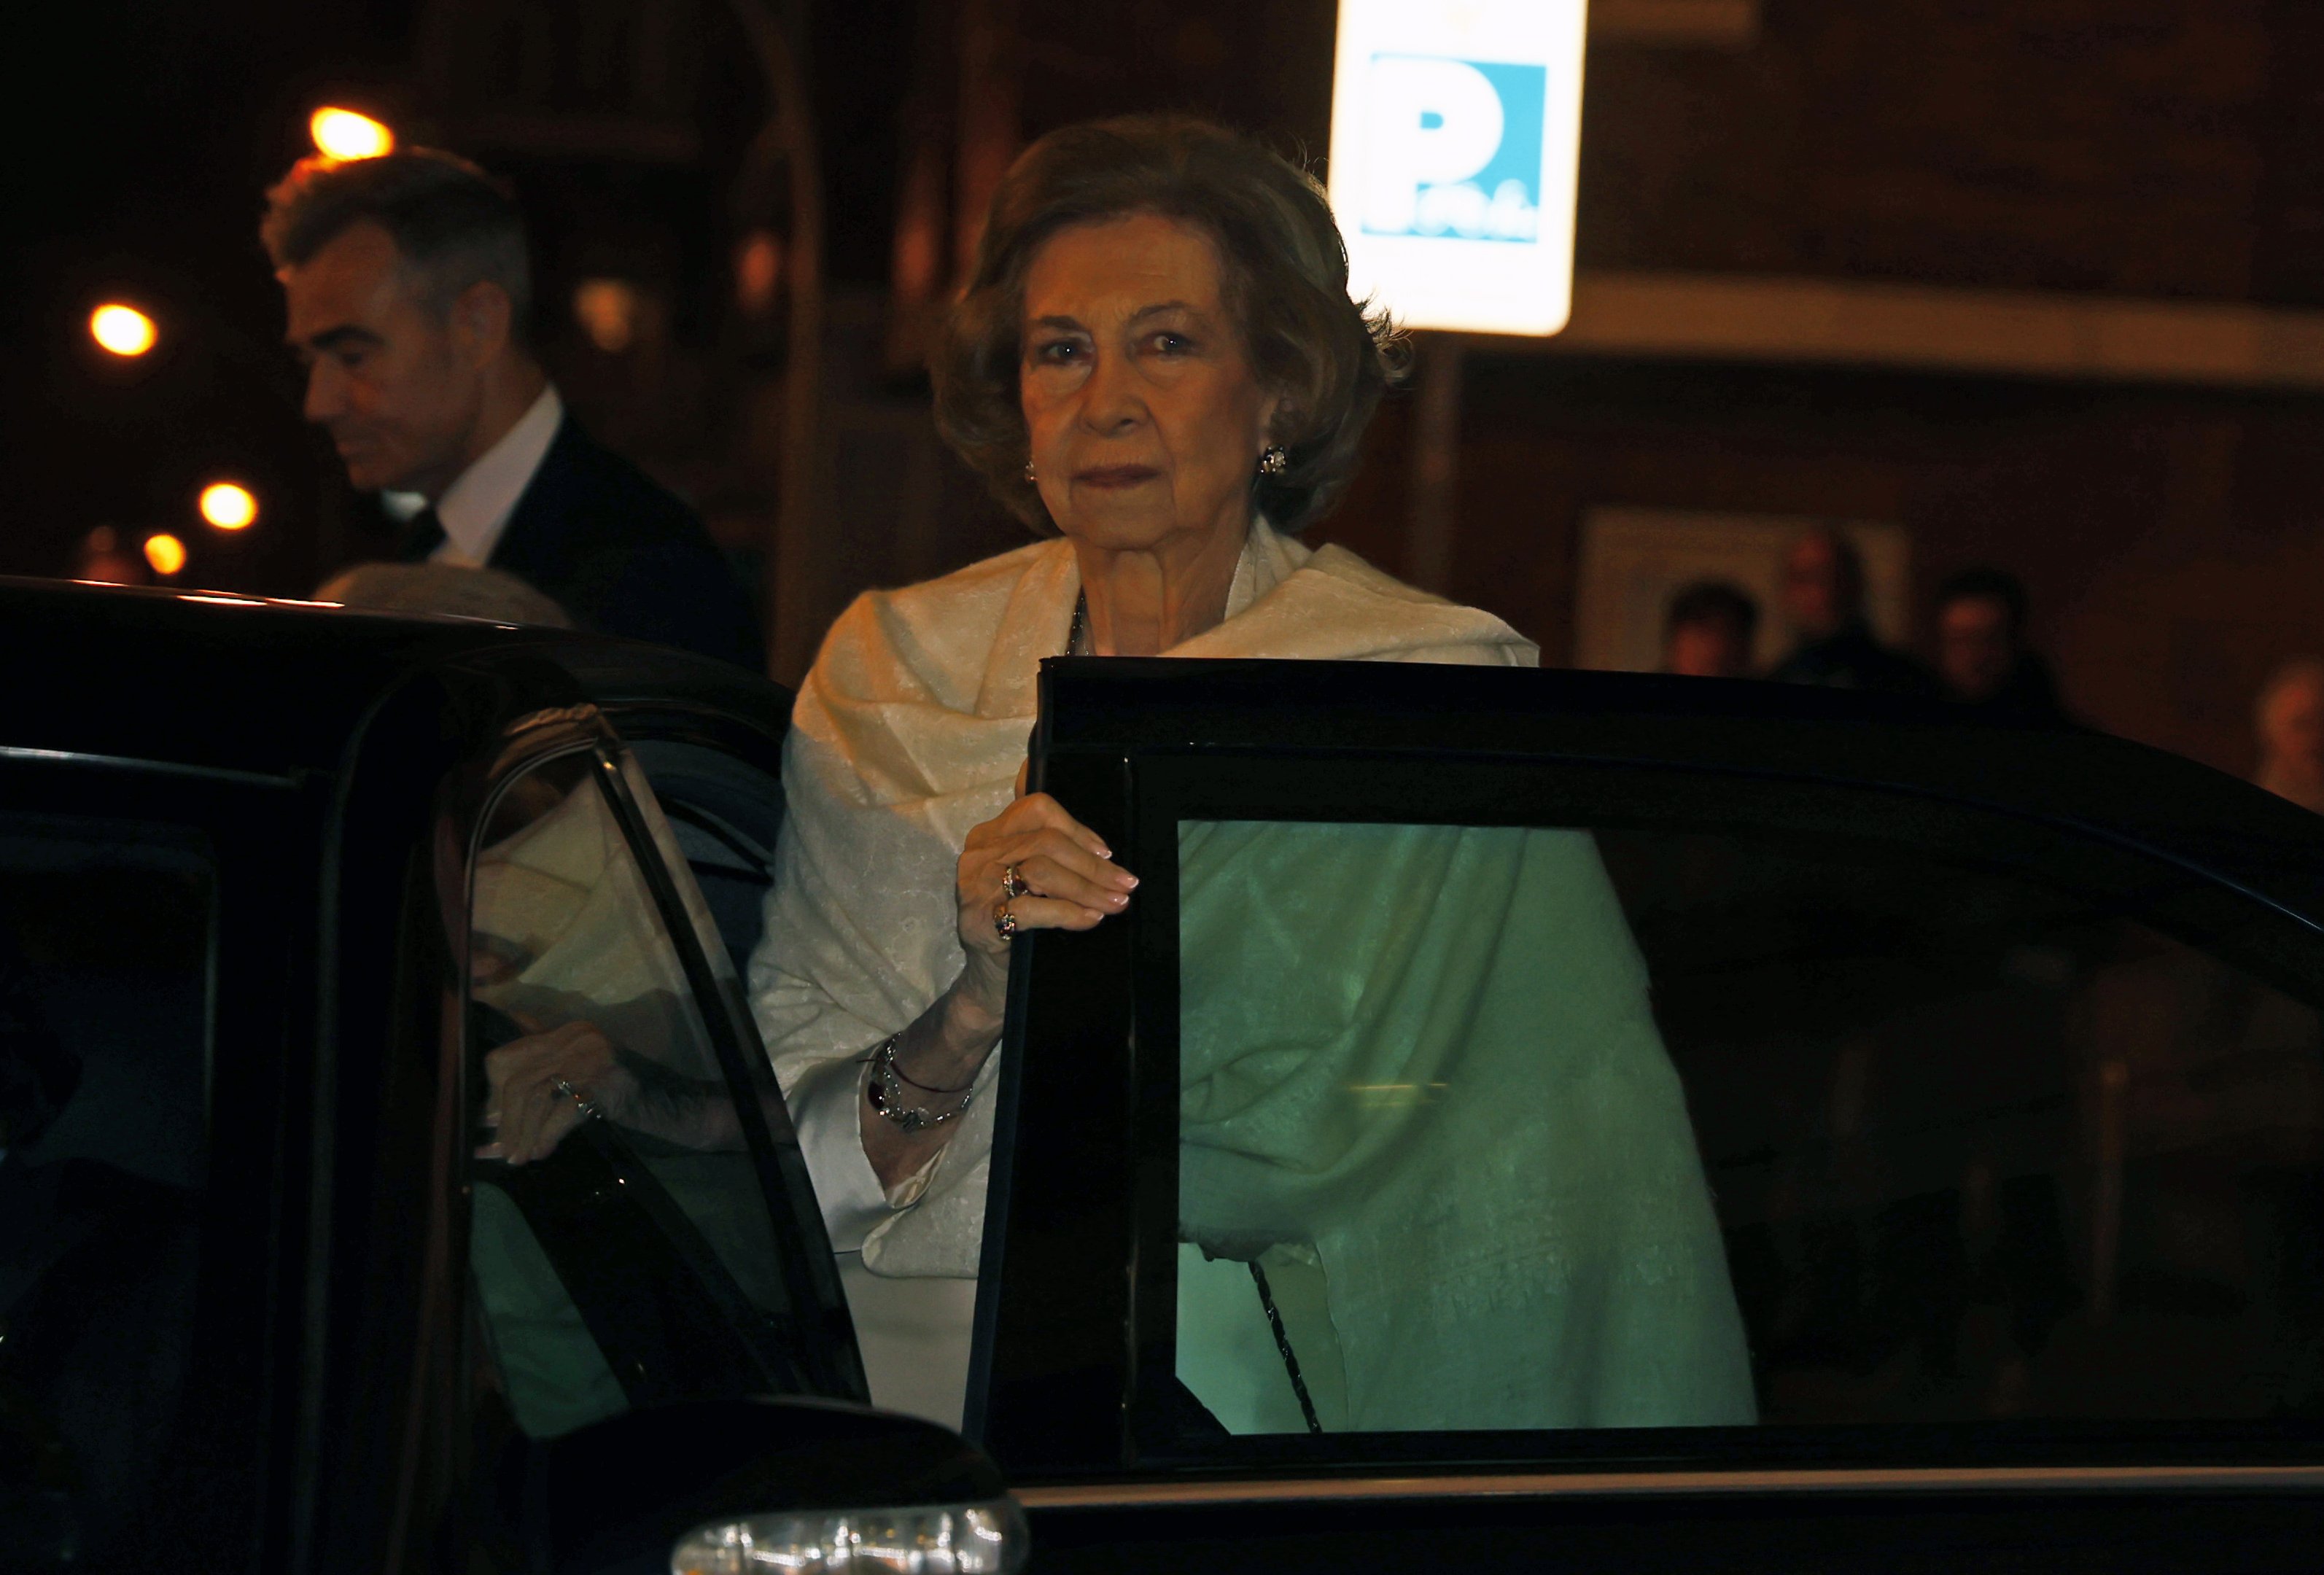 La reina Sofía exige reverencias a Letizia, que la llame alteza y le hable de usted